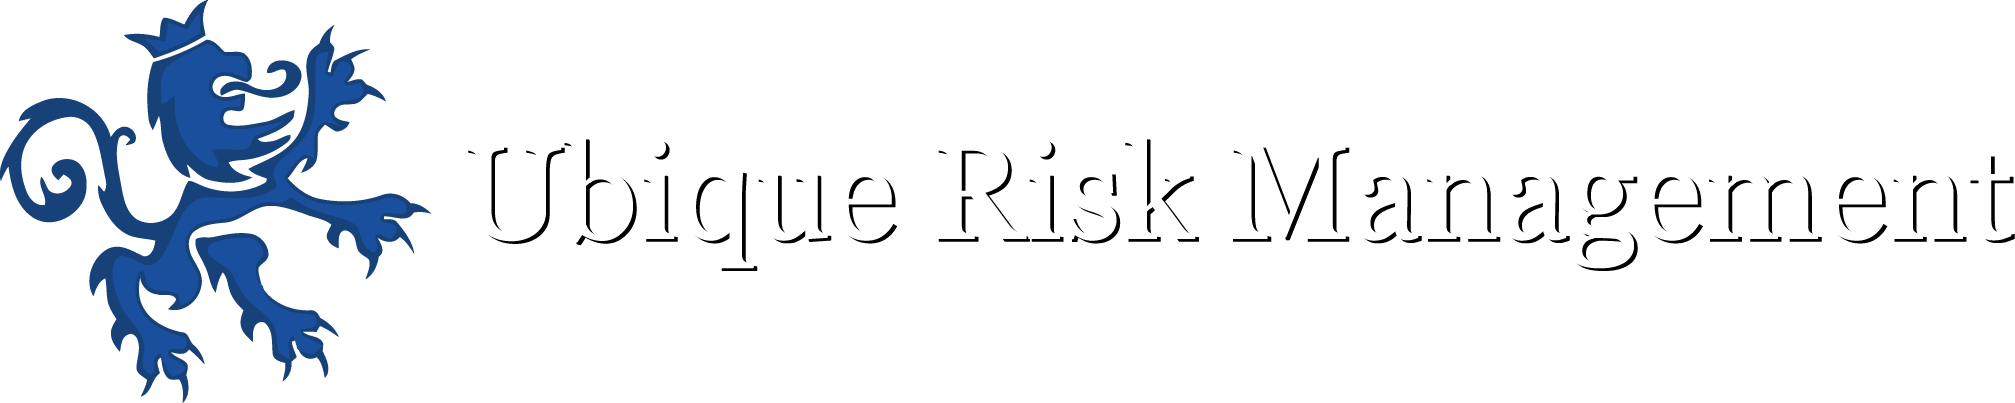 Ubique Risk Management Ltd